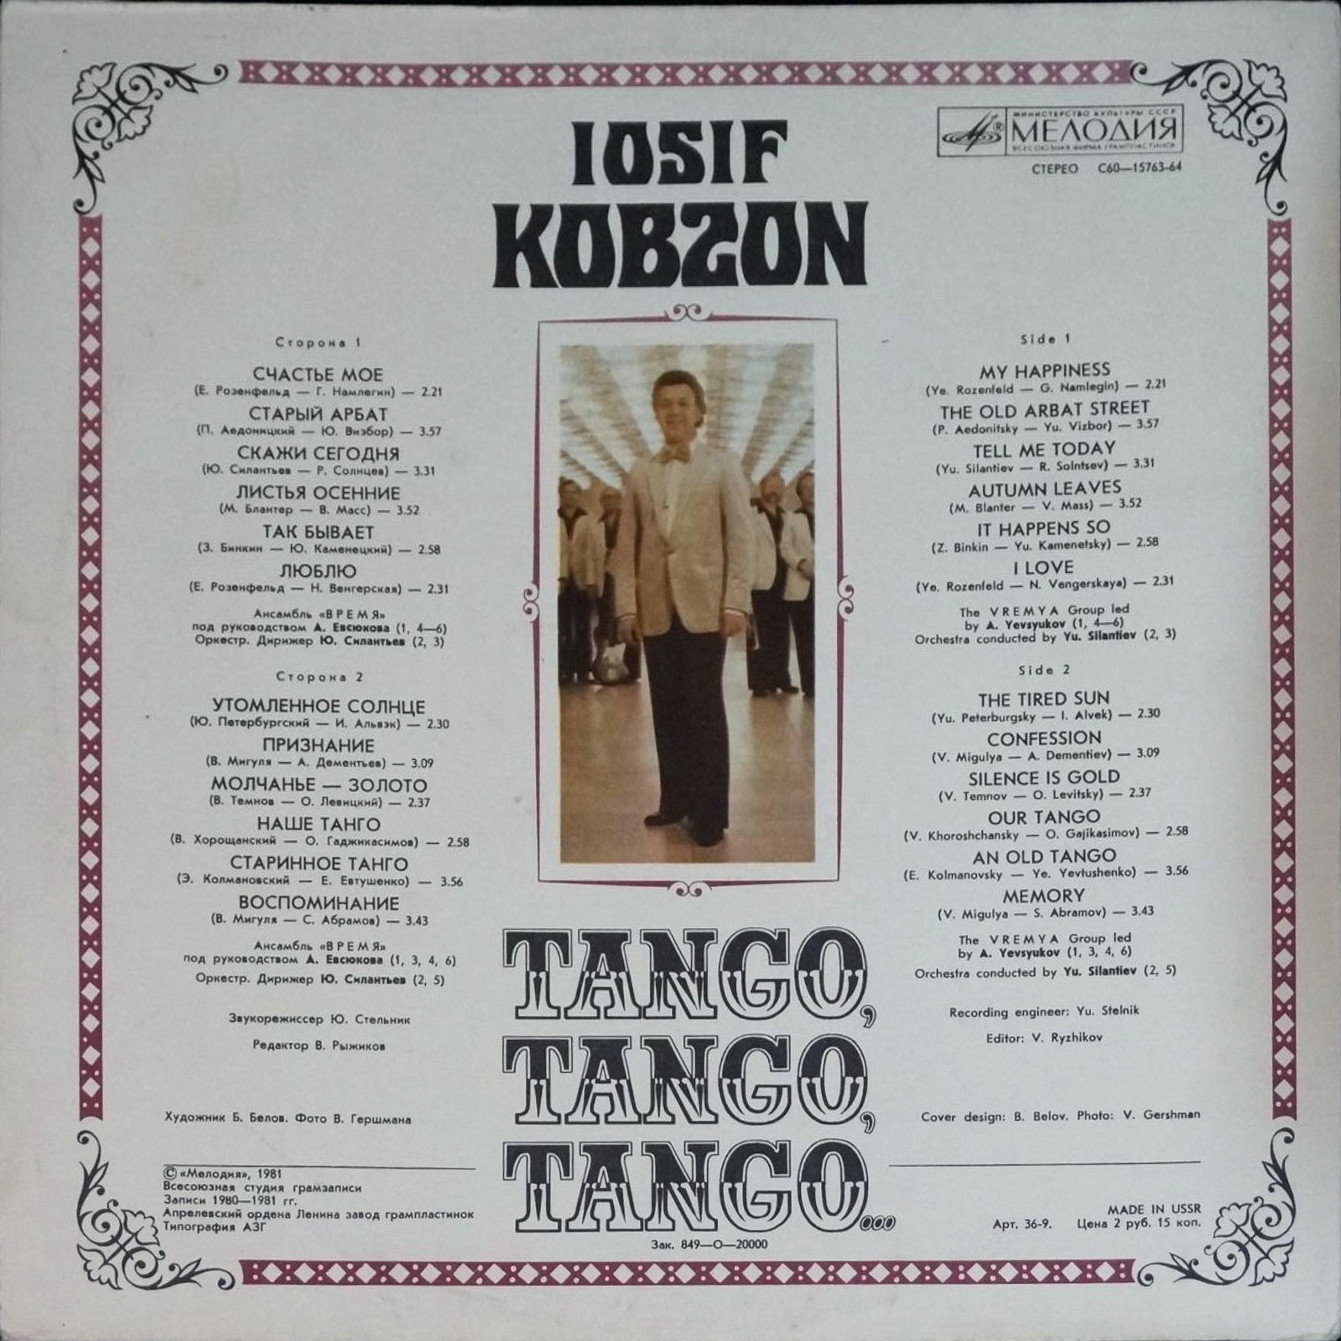 Иосиф КОБЗОН «Танго, танго, танго...»